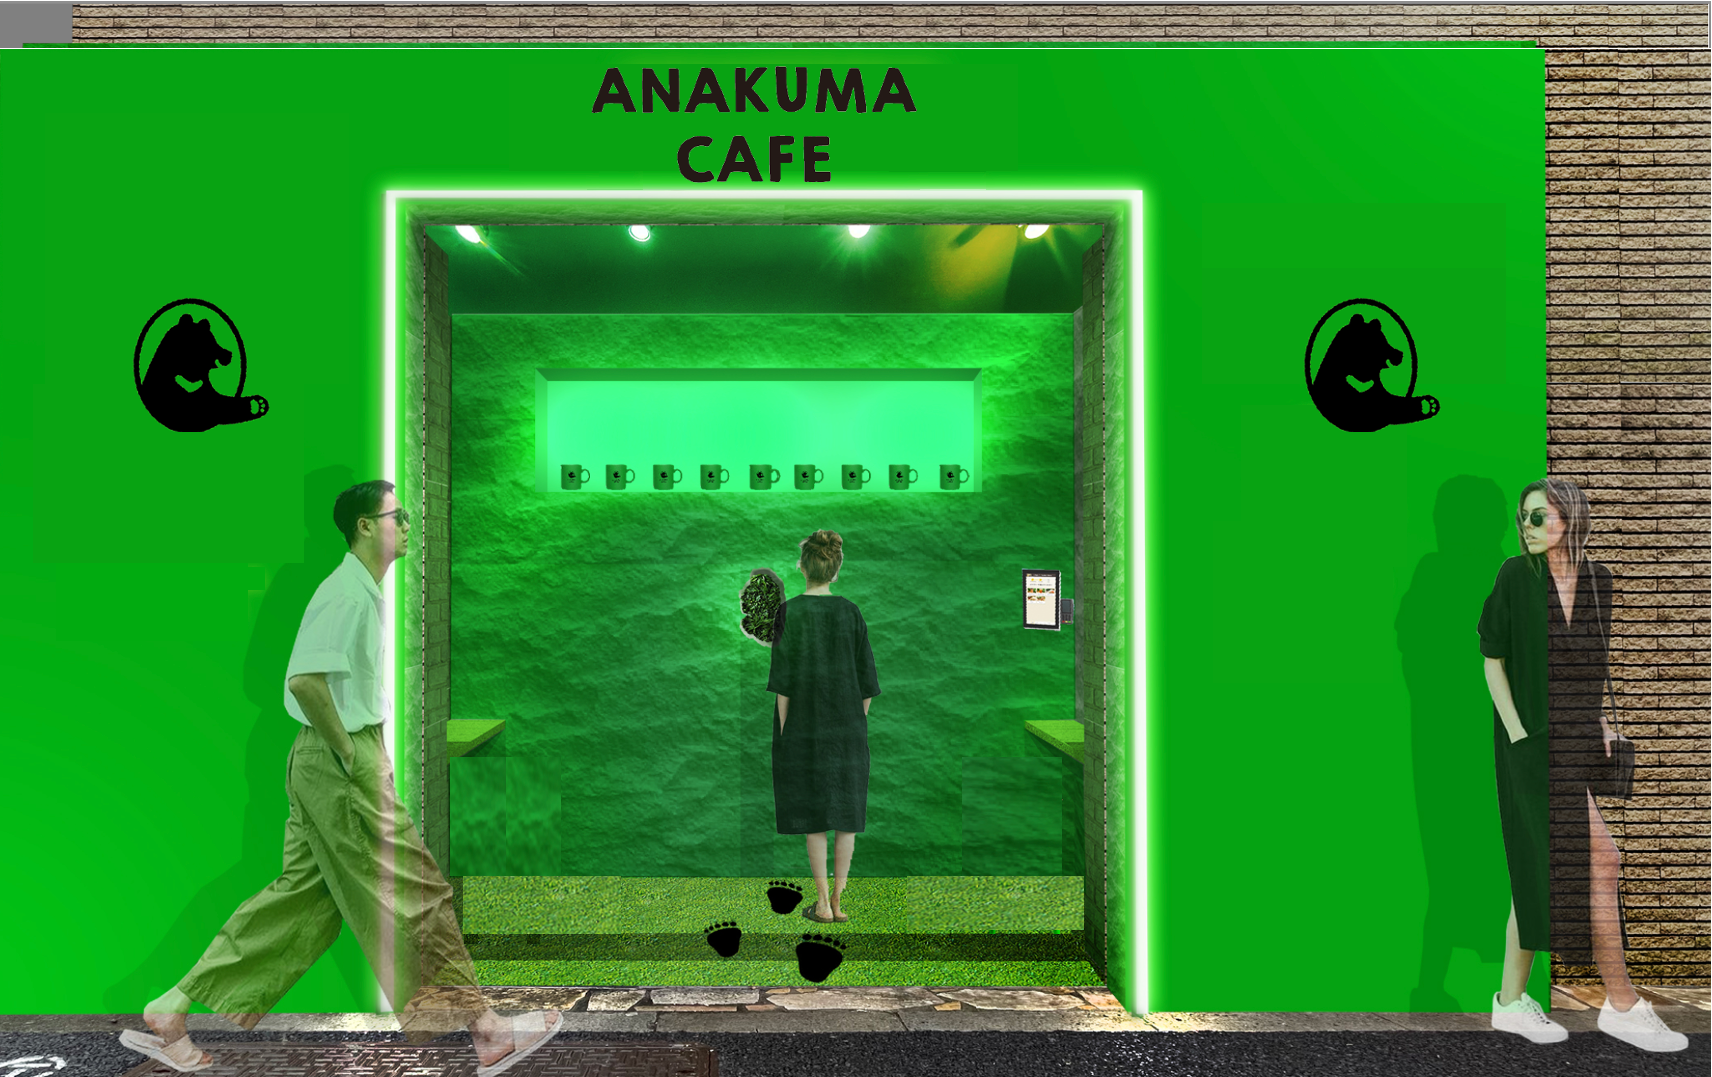 クマさんからCOFFEEを受け取る「非日常体験型」カフェ
『ANAKUMA CAFE』の第一号店が10月5日に原宿にオープン！